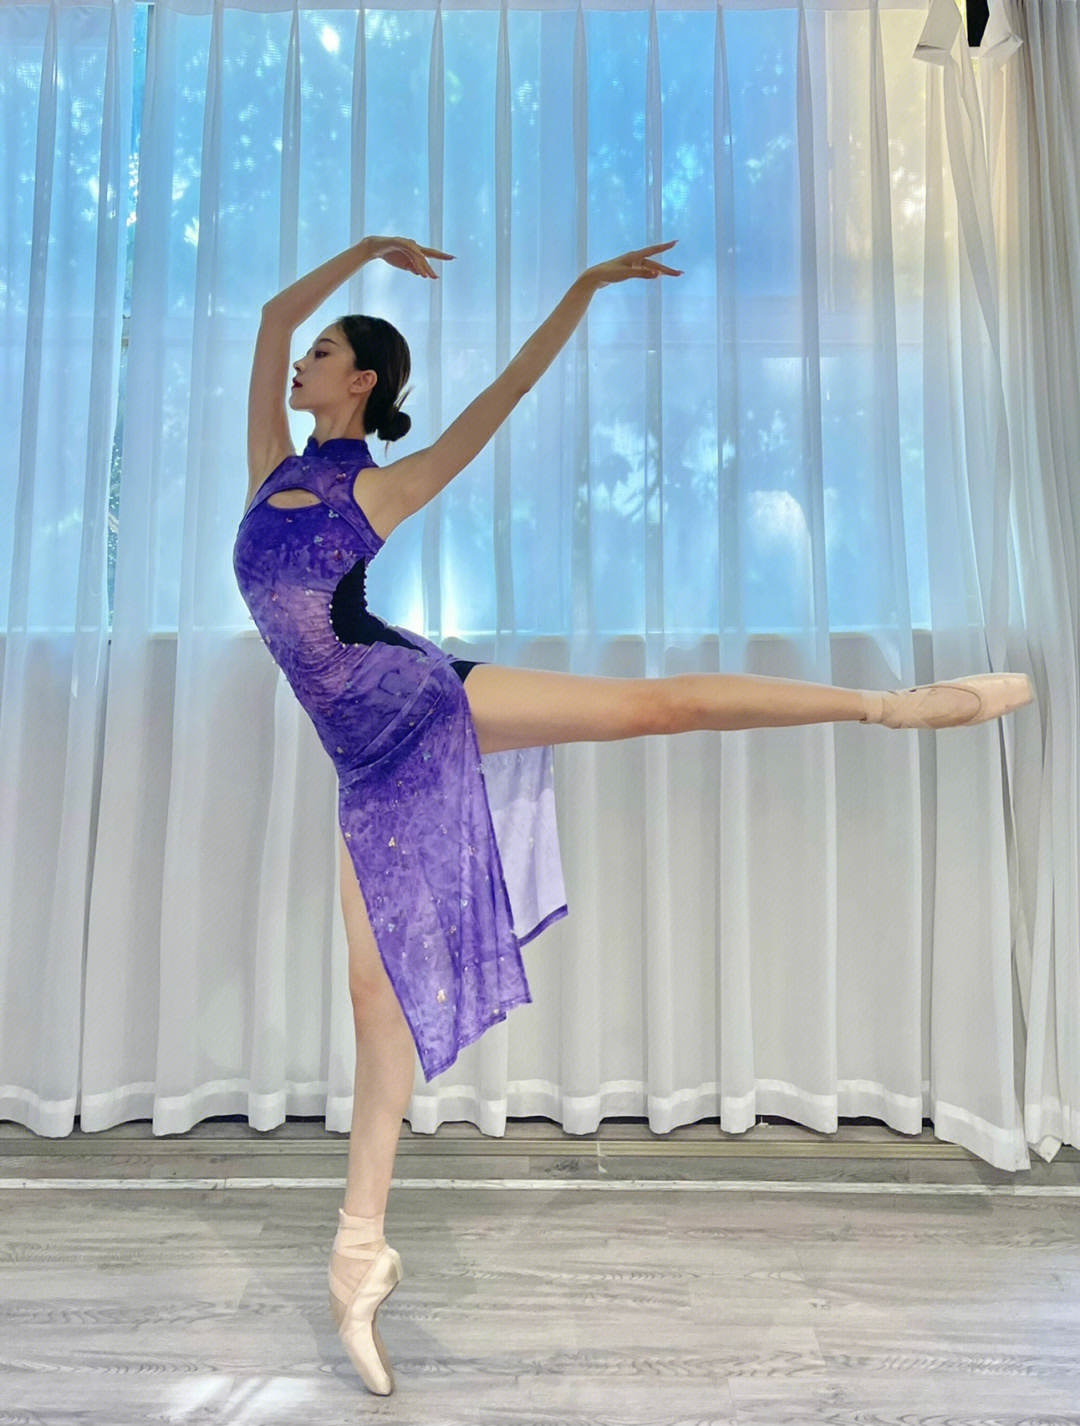 辽宁芭蕾舞团老师图片